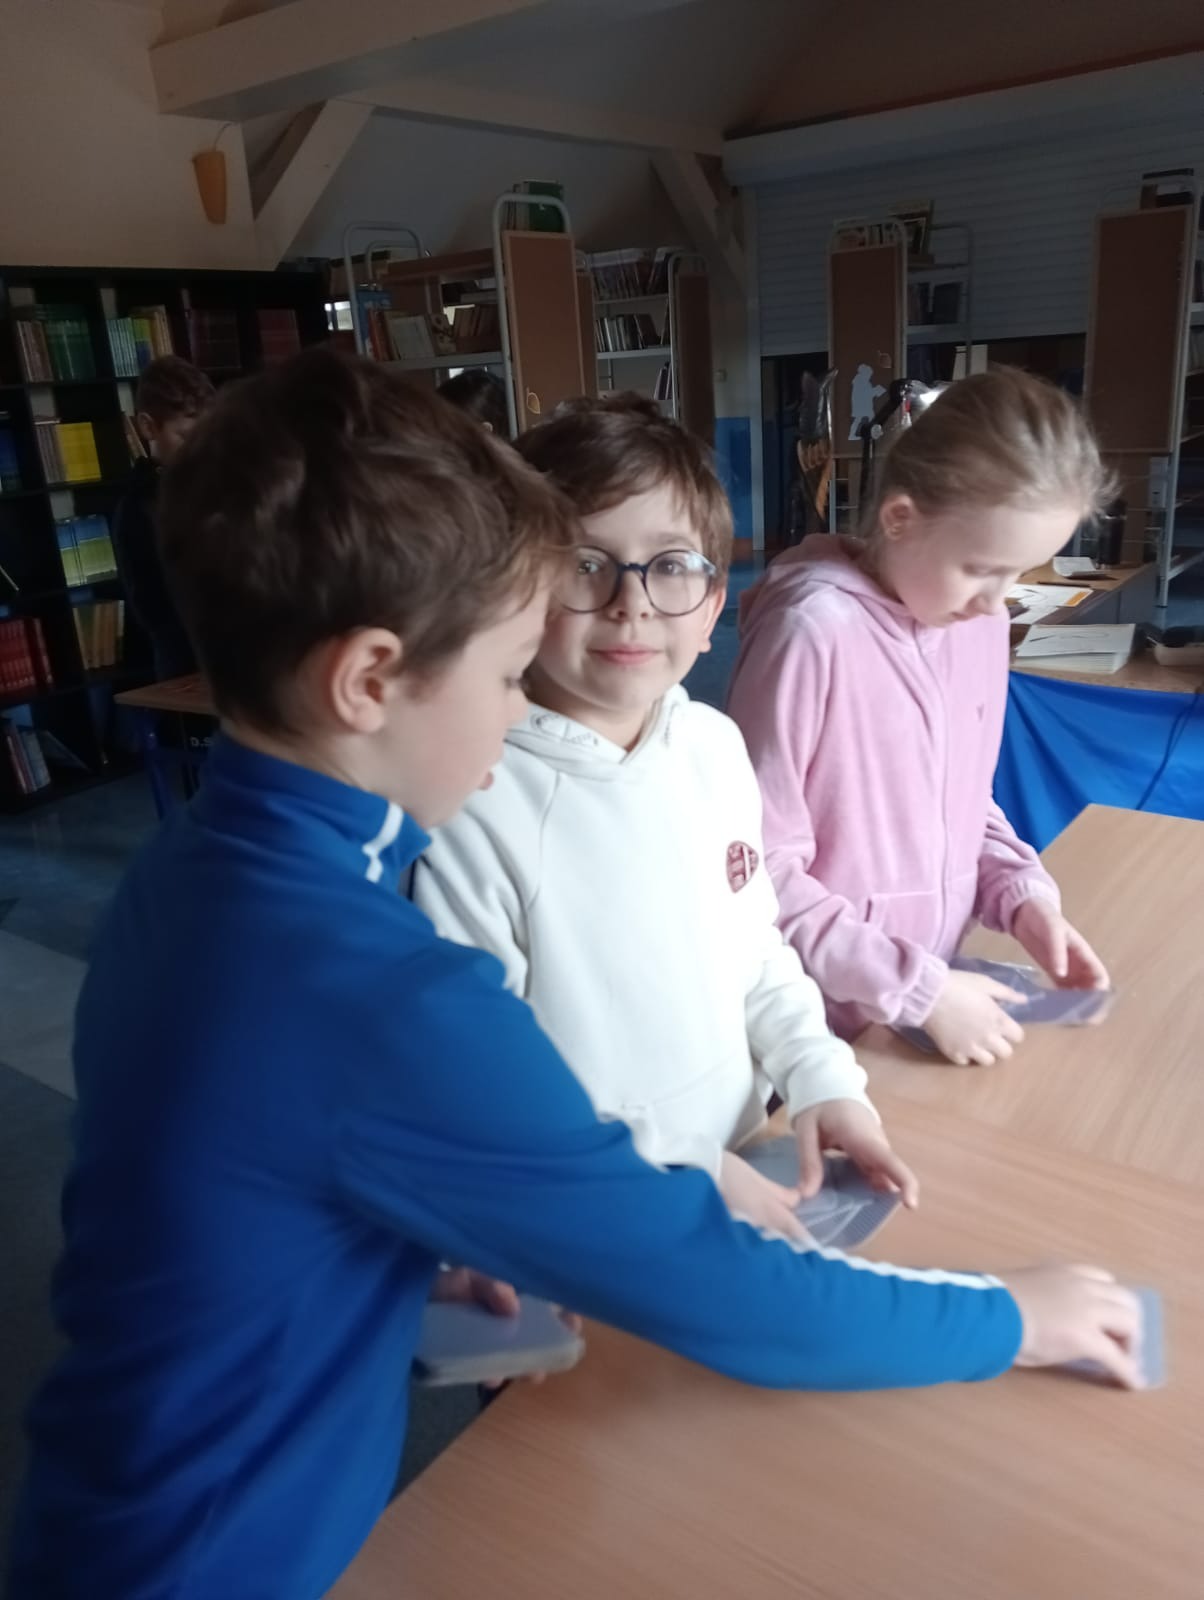 uczniowie grają w grę w bibliotece szkolnej